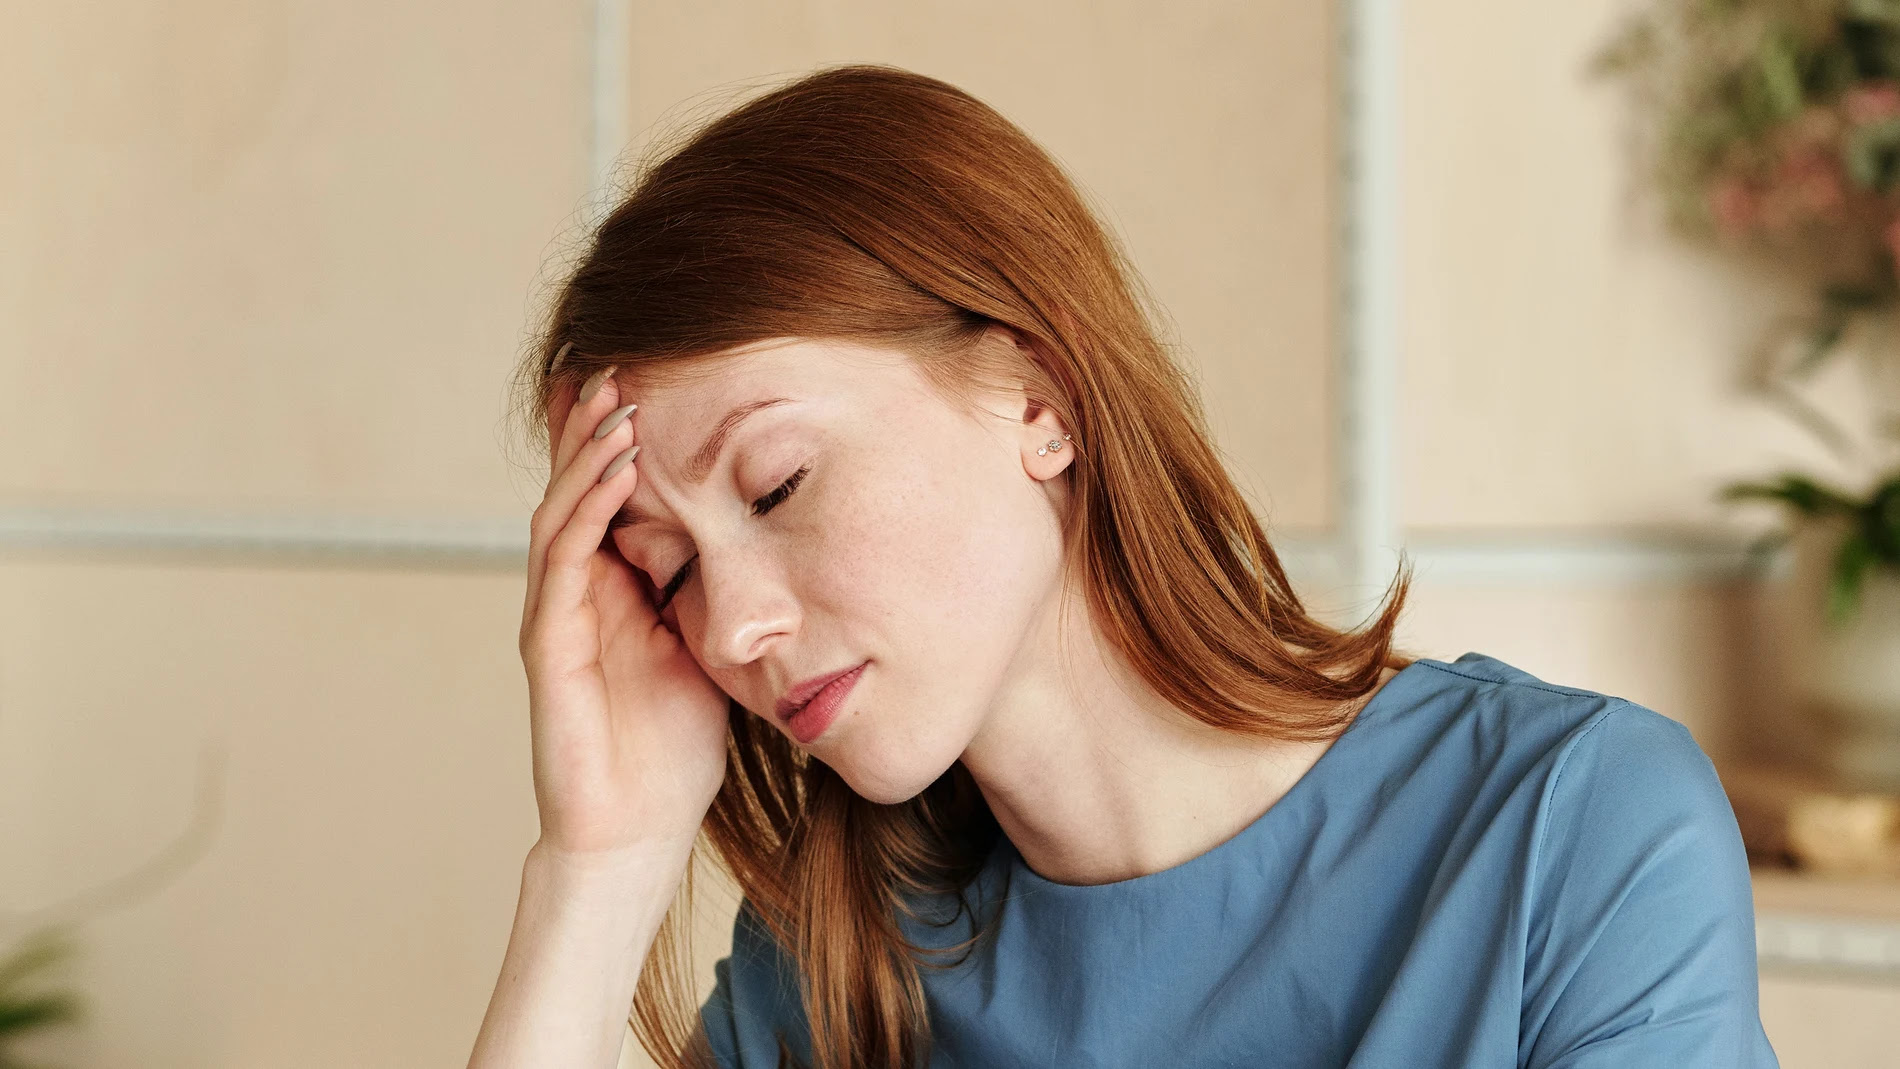 Cuánto dura el dolor de cabeza persistente tras contagiarse de Covid-19?